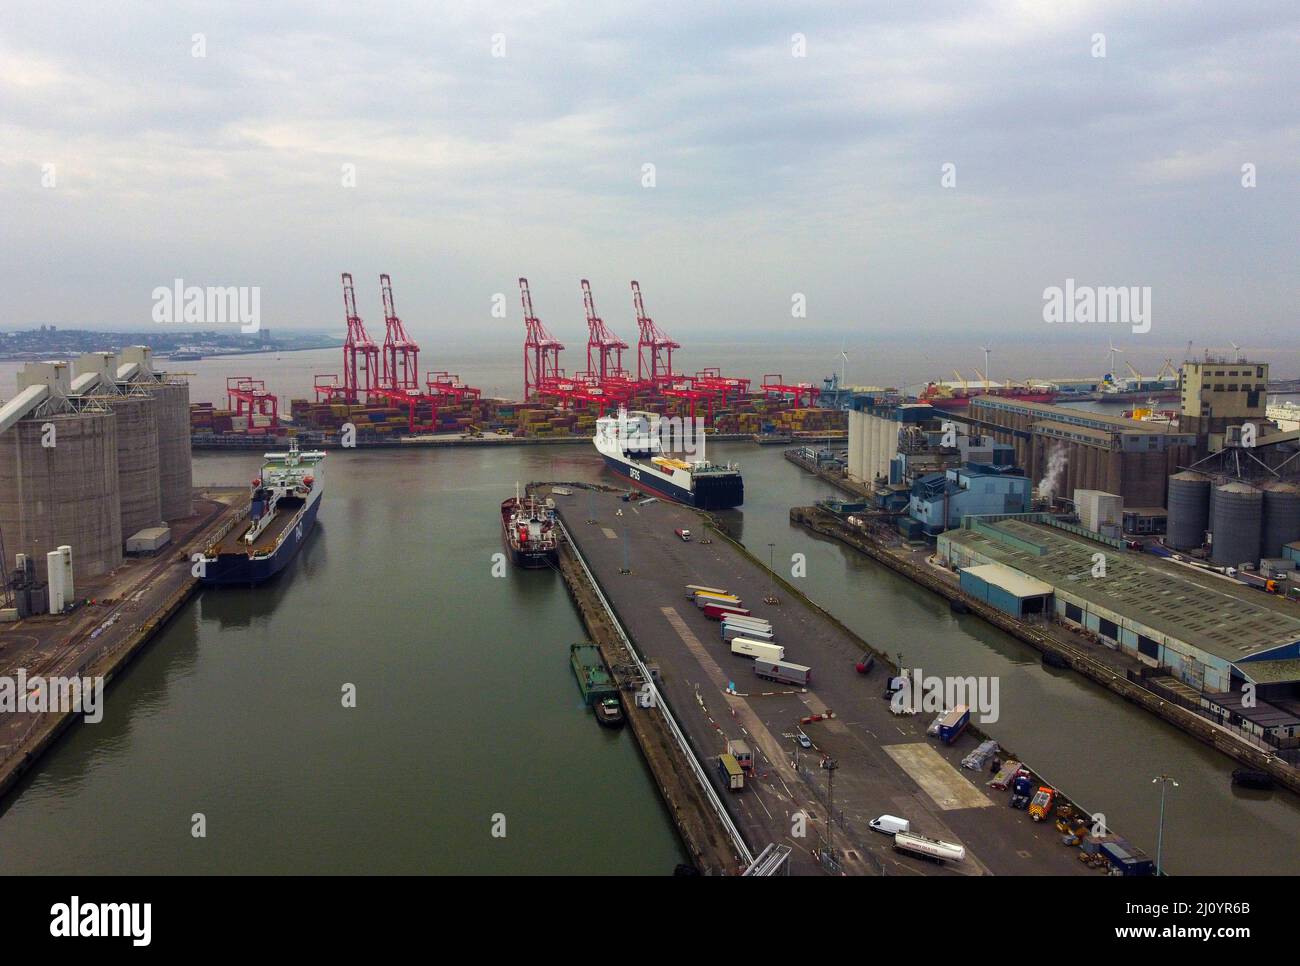 Vue générale du ferry P&O Norbay (à gauche) amarré à Gladstone Dock à Liverpool. P&O Ferries a remis la semaine dernière 800 avis de départ immédiats à des marins. Date de la photo: Lundi 21 mars 2022. Banque D'Images